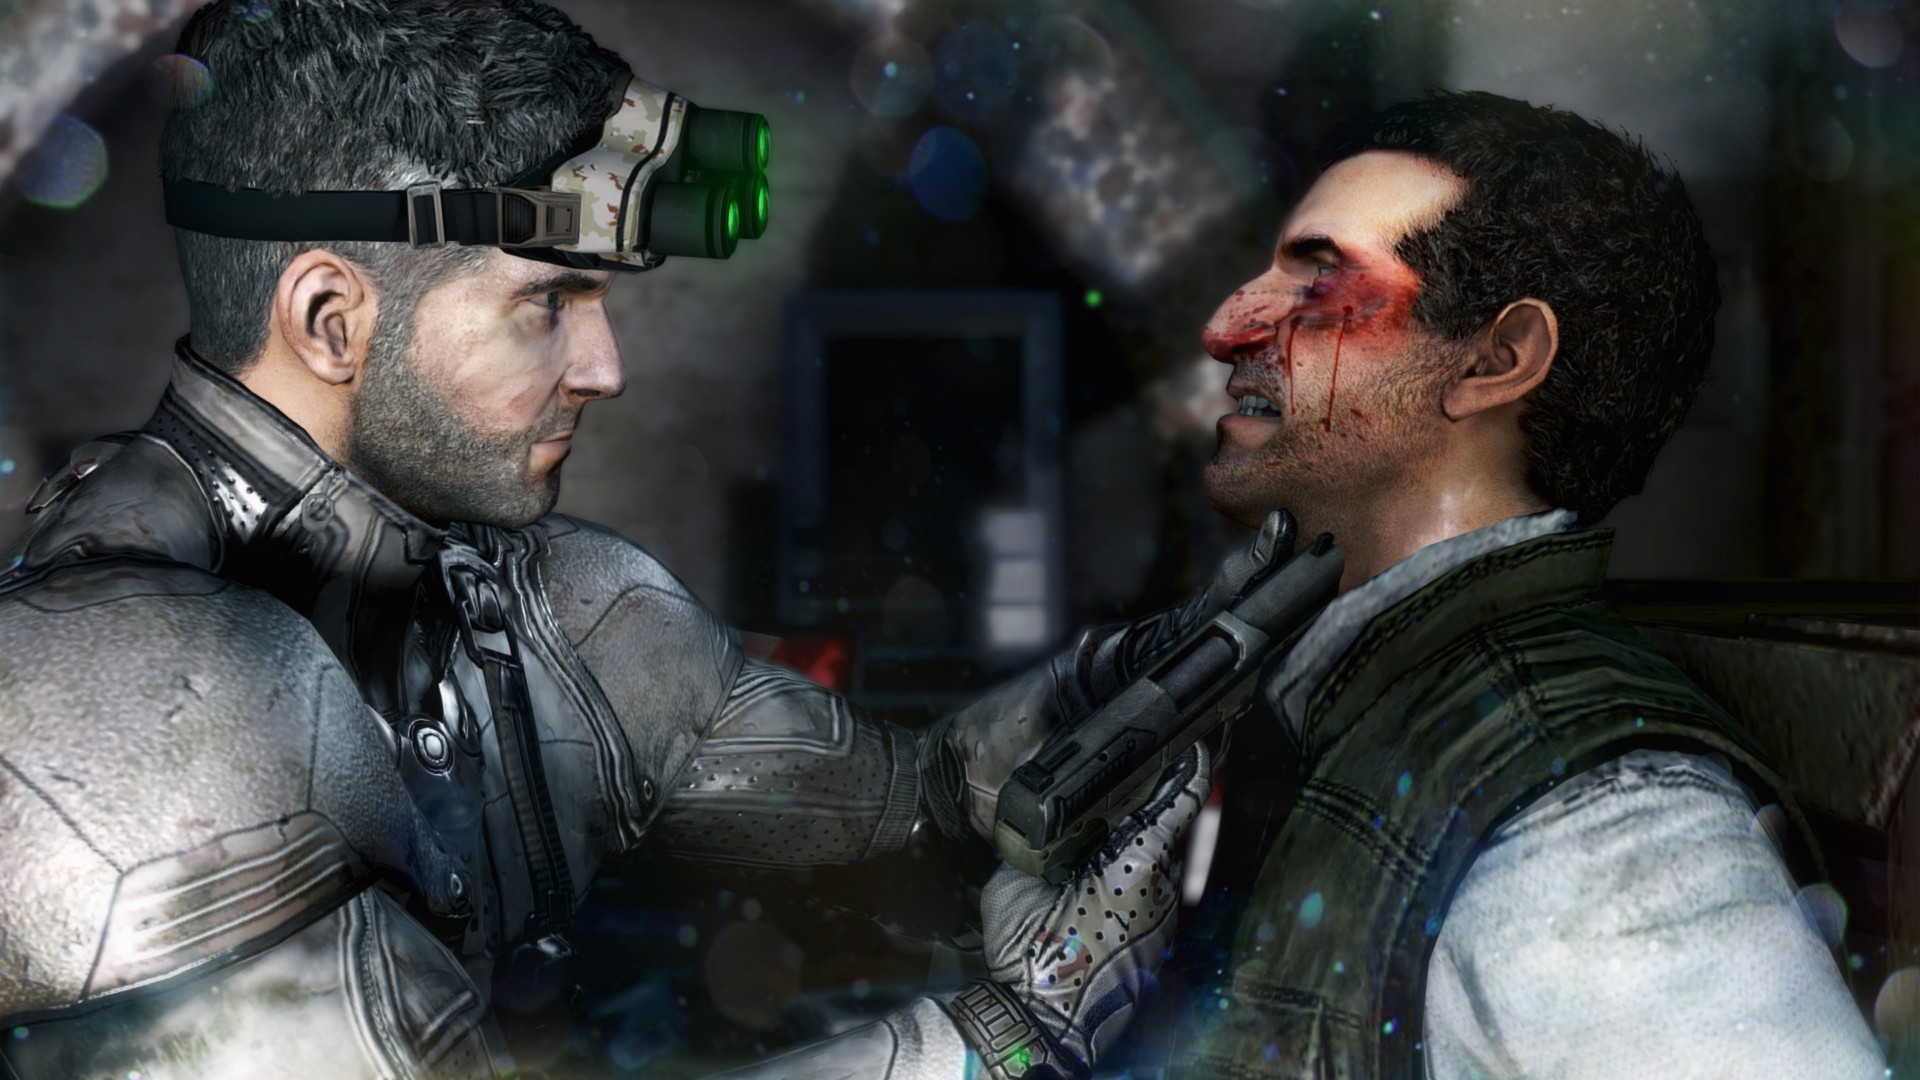 Imagem promocional mostra cena do jogo Splinter Cell Blacklist, lançado em 2013